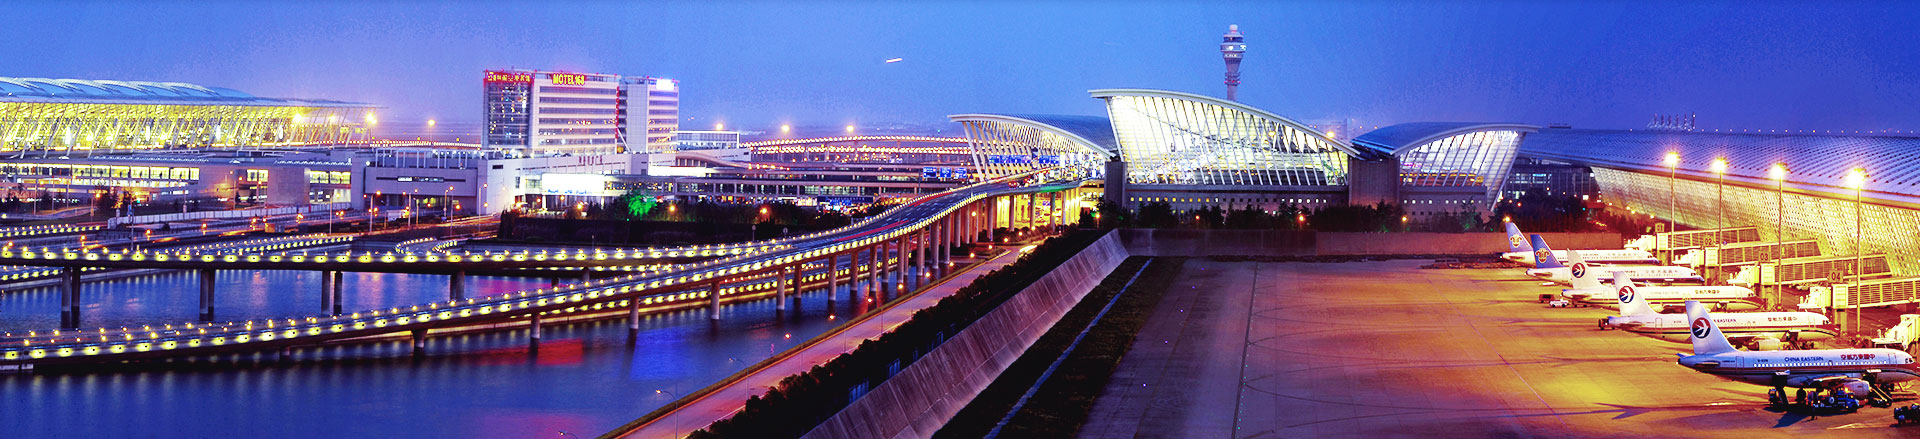 上海空运口岸-浦东国际机场